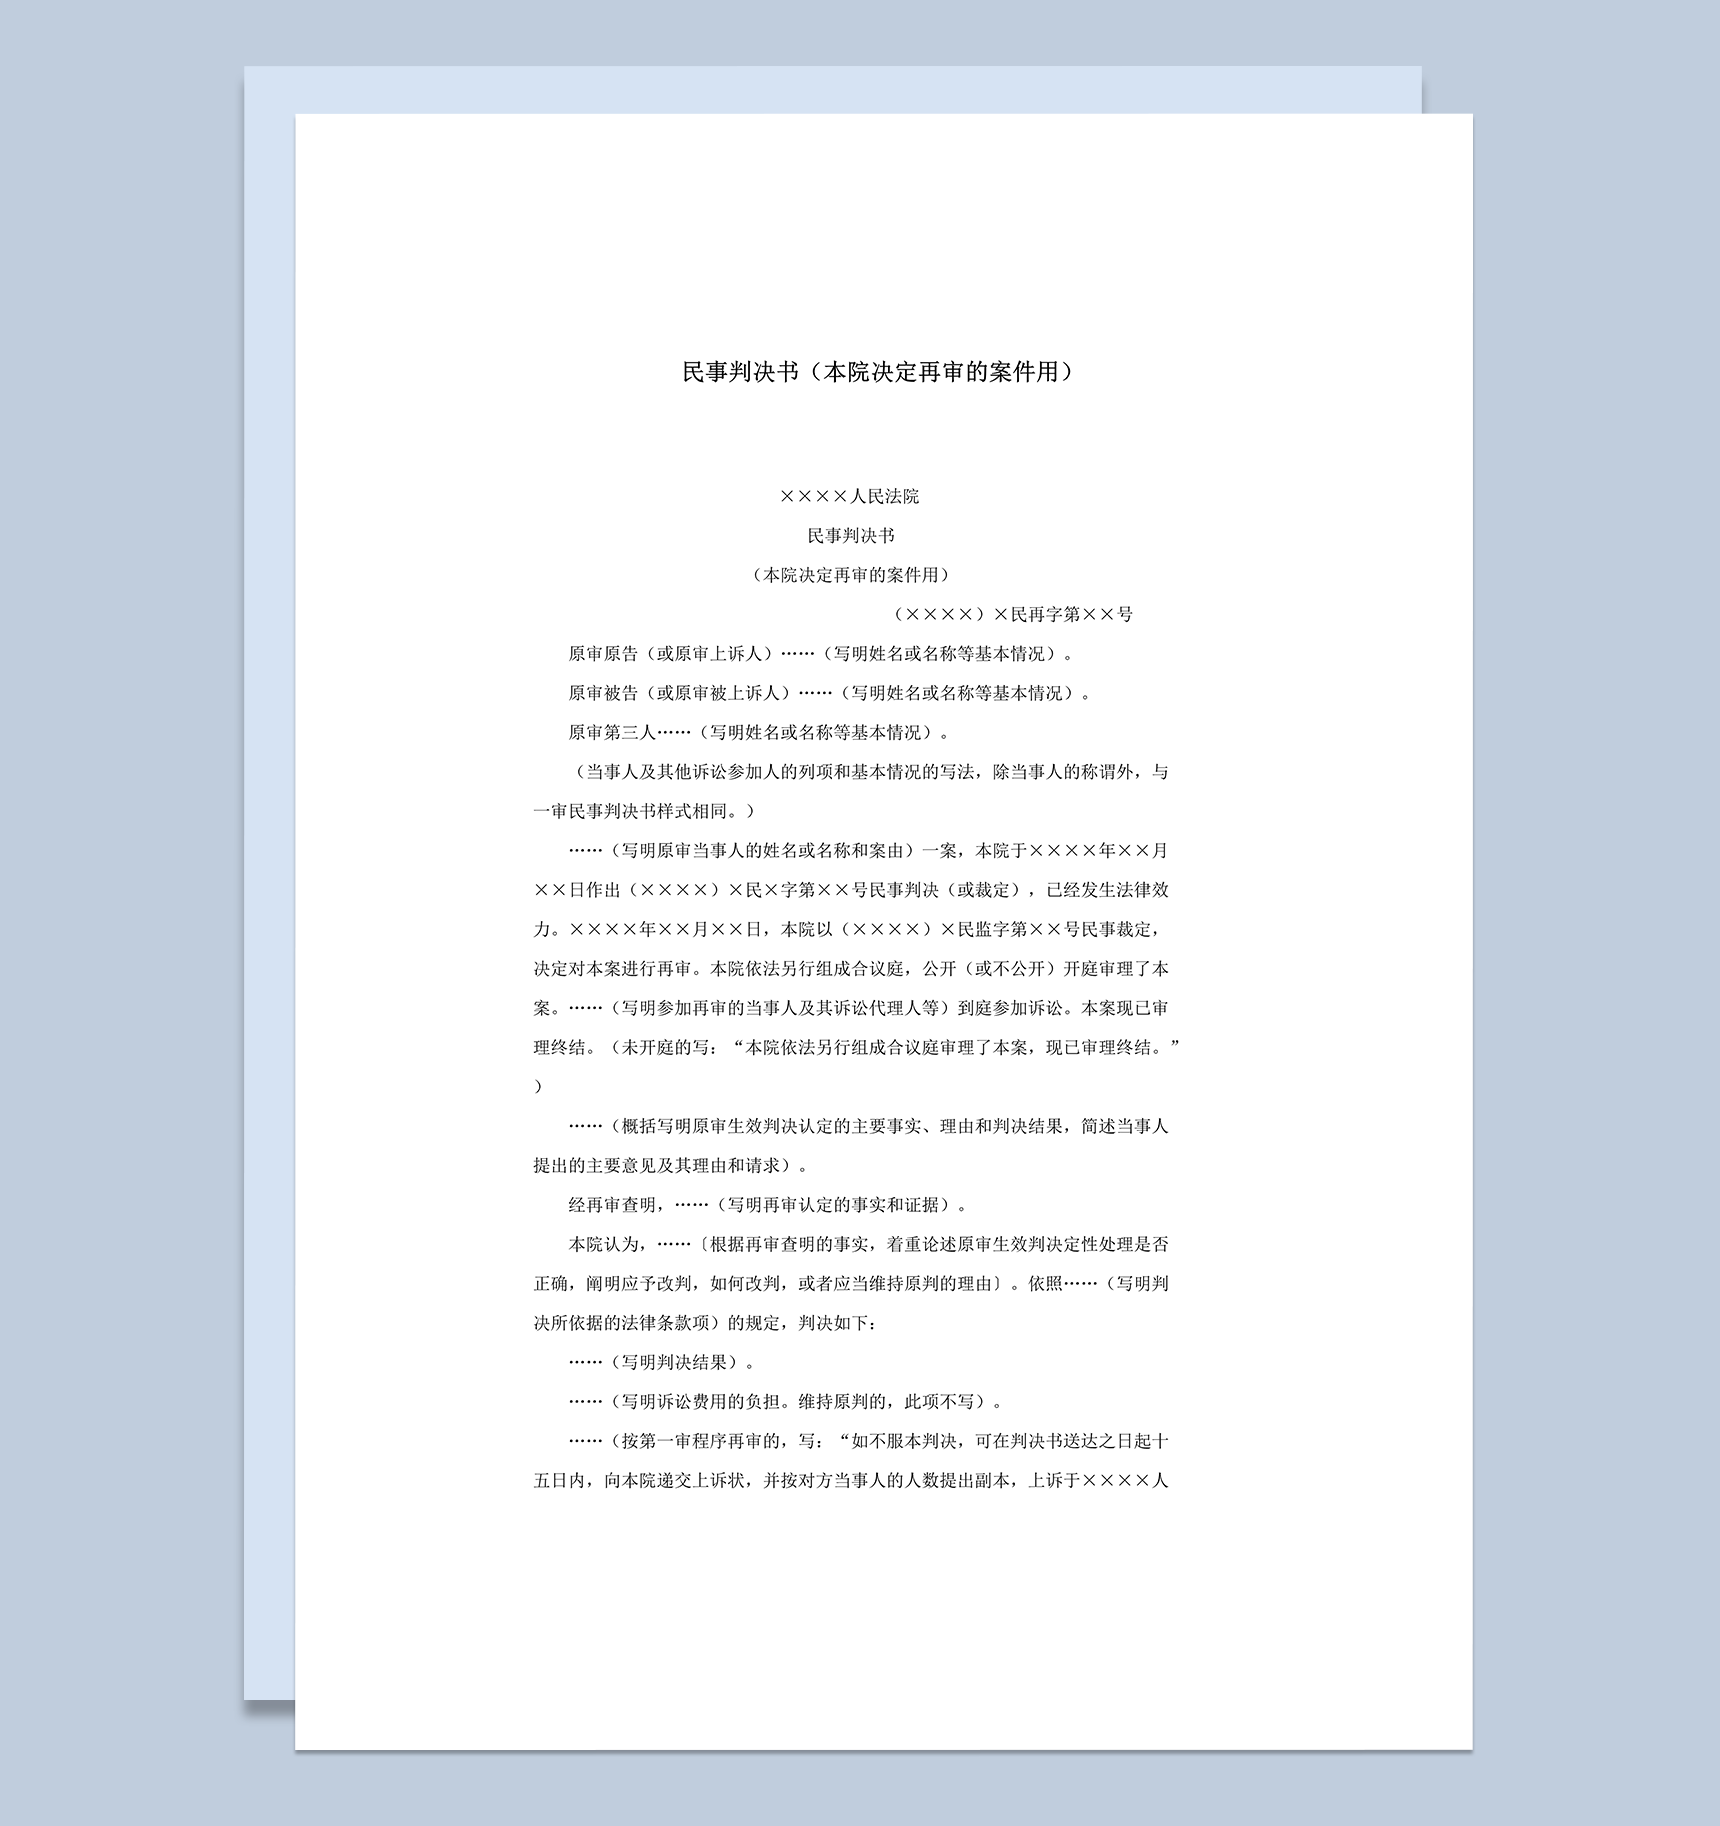 民事判决书本院决定再审的案件用word模板